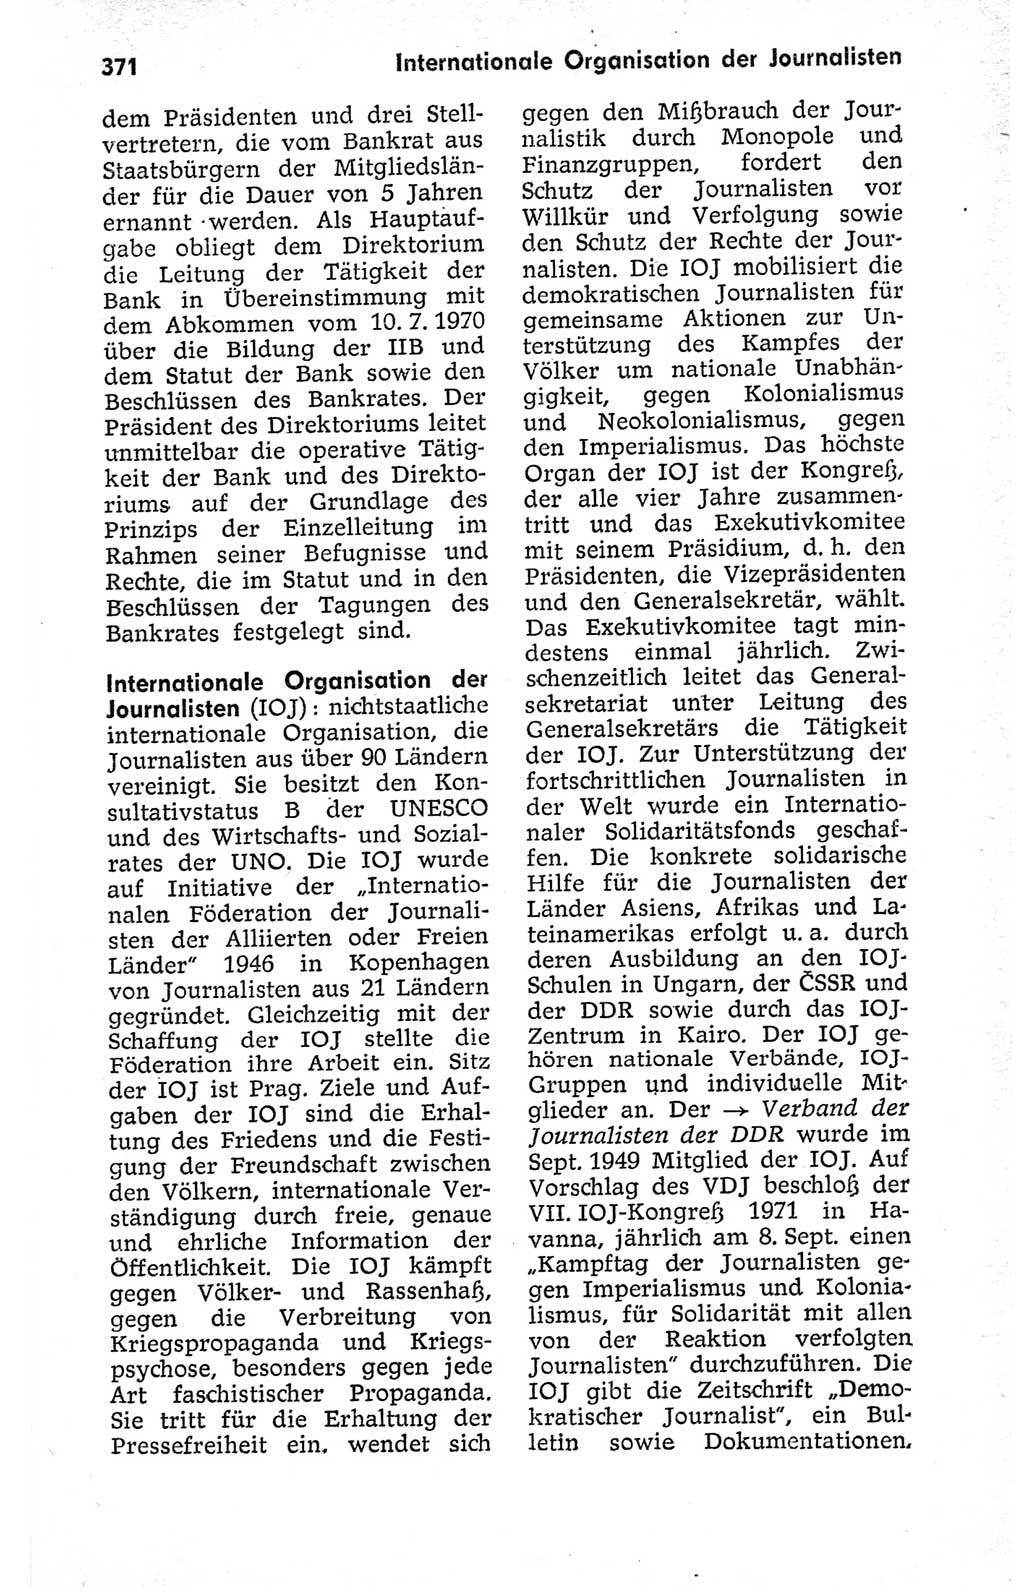 Kleines politisches Wörterbuch [Deutsche Demokratische Republik (DDR)] 1973, Seite 371 (Kl. pol. Wb. DDR 1973, S. 371)